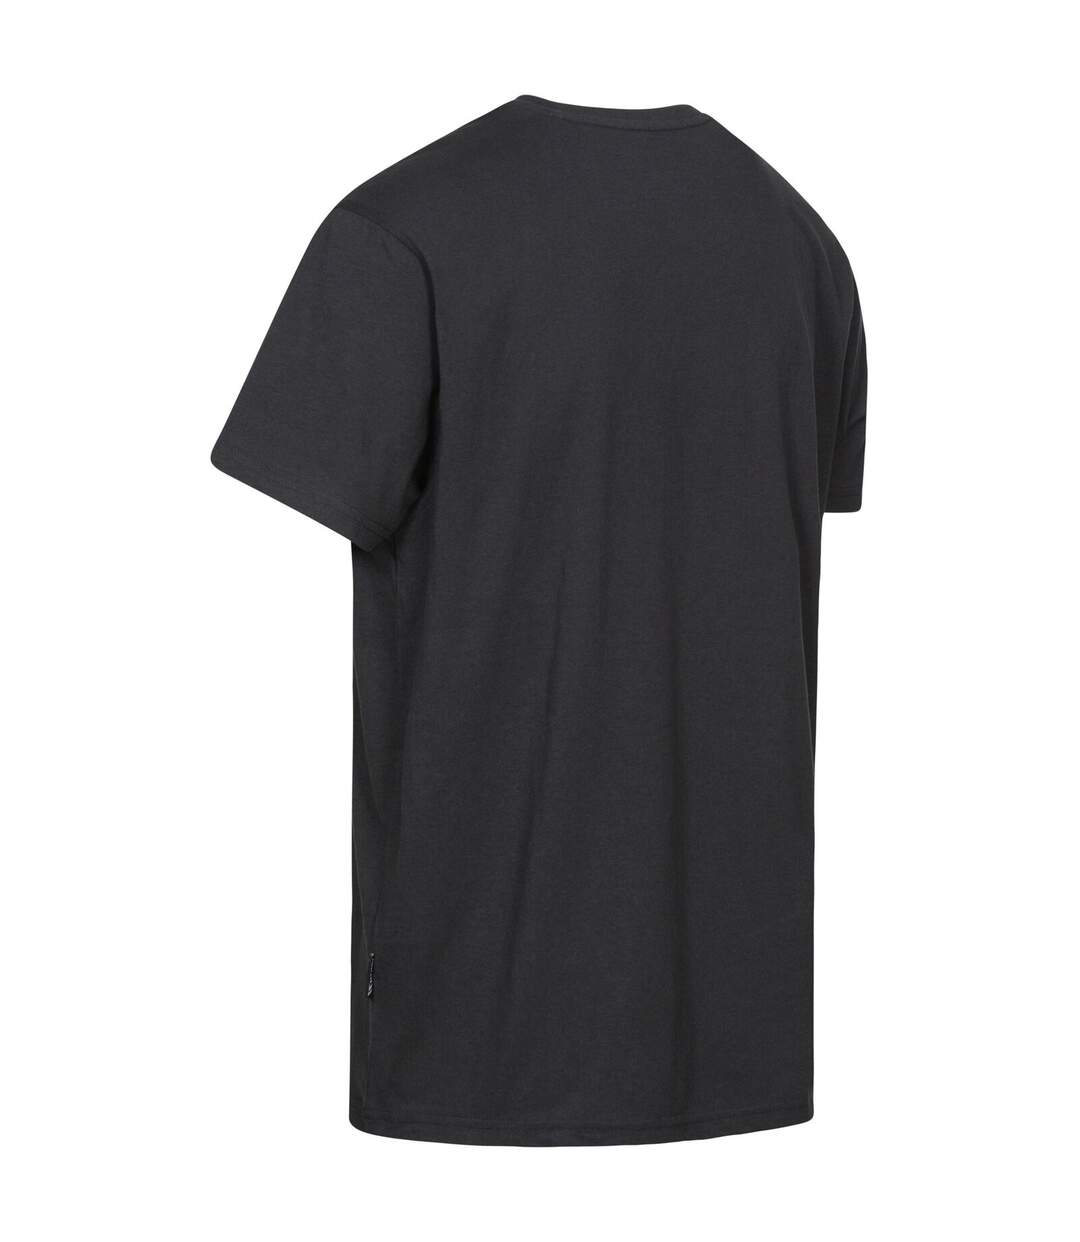 Trespass - T-shirt à manches courtes CASHING - Homme (Noir) - UTTP4122